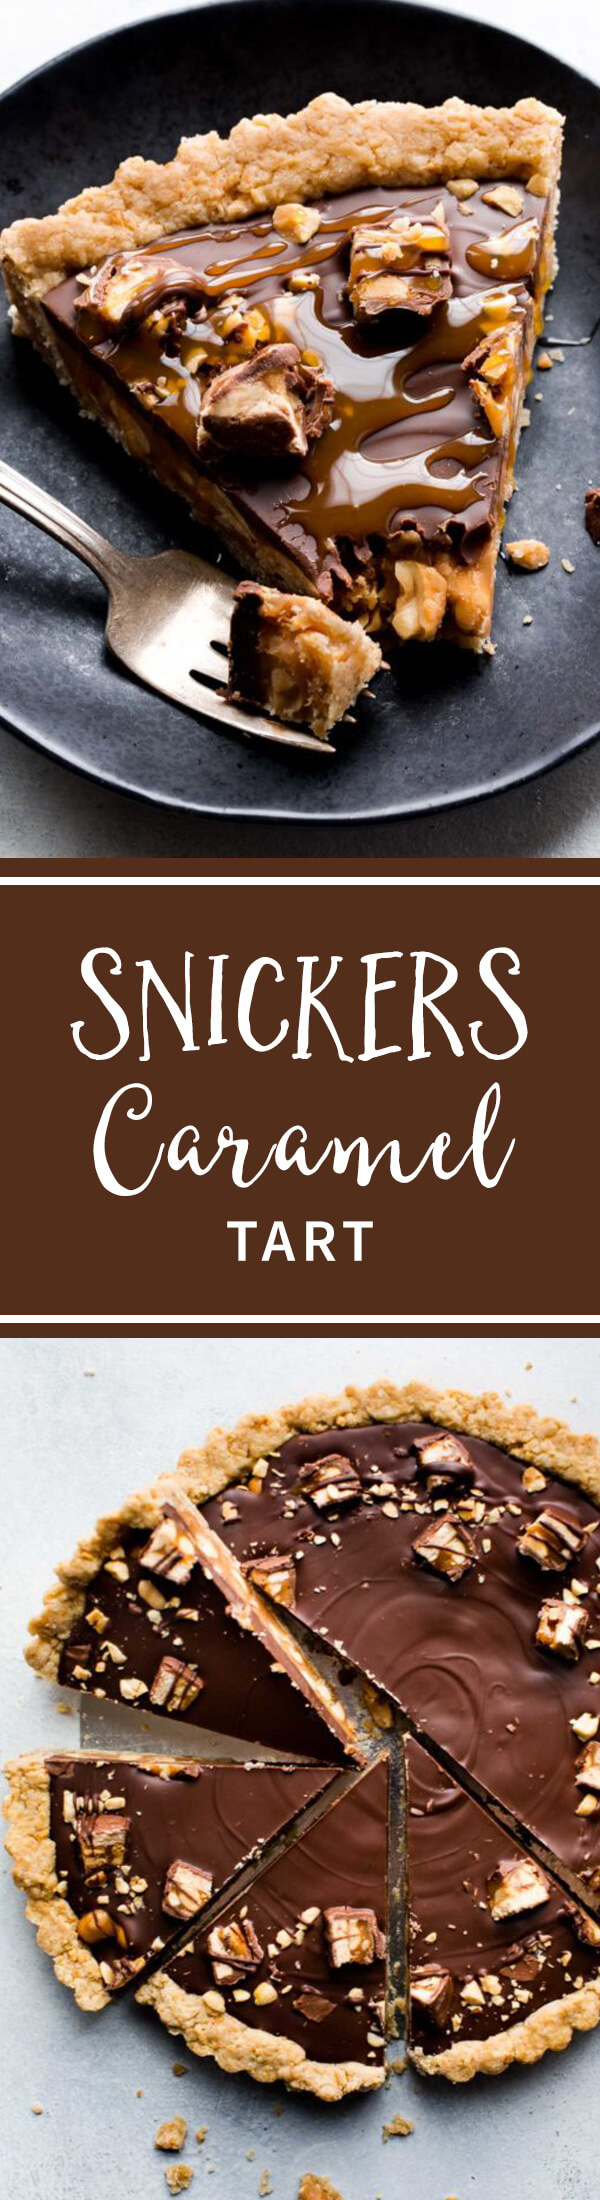 Tarte au caramel Snickers avec caramel salé, croûte d'arachide, arachides salées et garniture au beurre d'arachide au chocolat! Recette sur sallysbakingaddiction.com